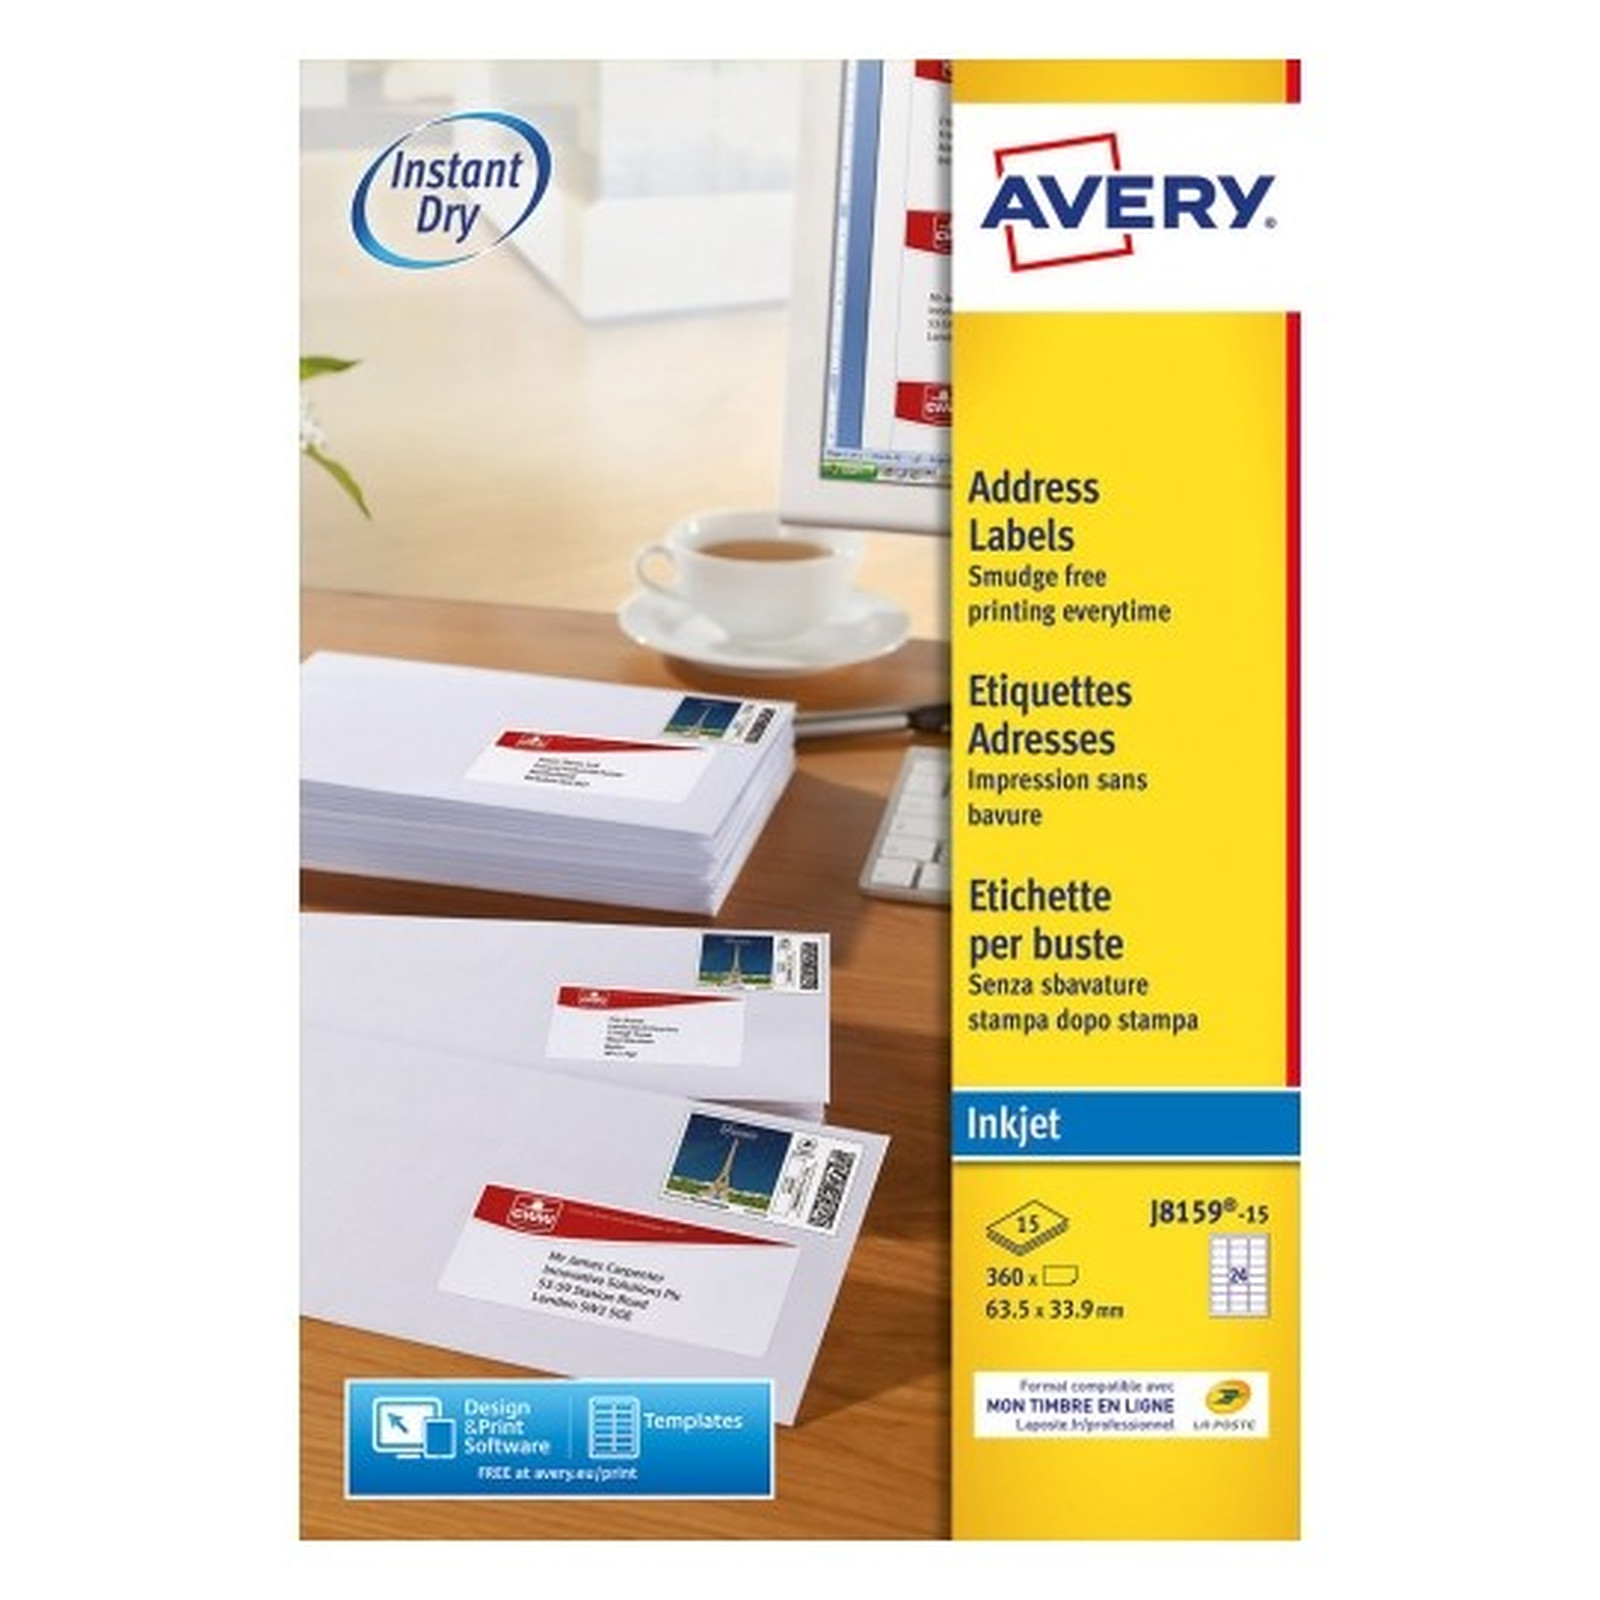 Avery Etiquettes pour timbres 33,9 x 63,5 mm, Blanc, Jet d'encre - Etiquette Avery